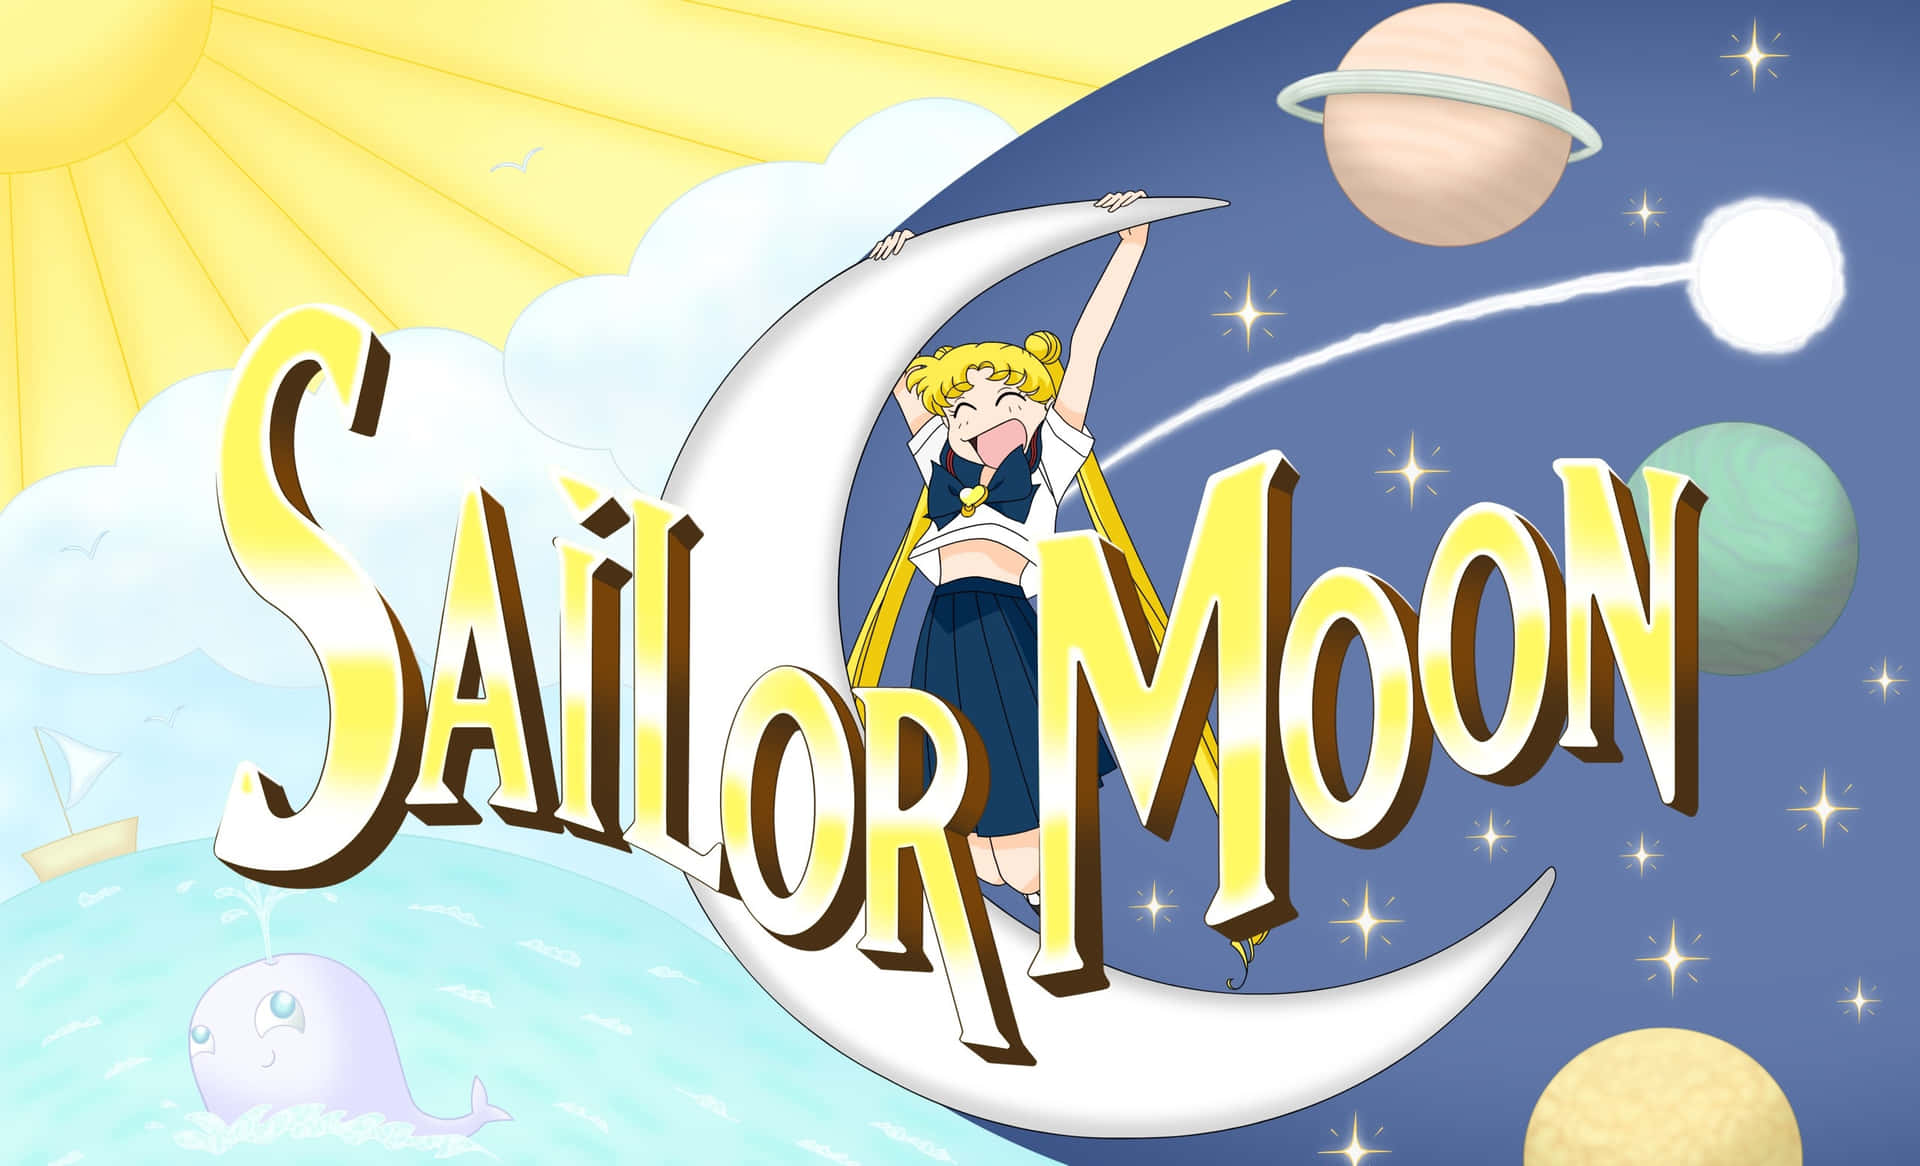 Sailormoon - Defendendo O Amor E A Justiça